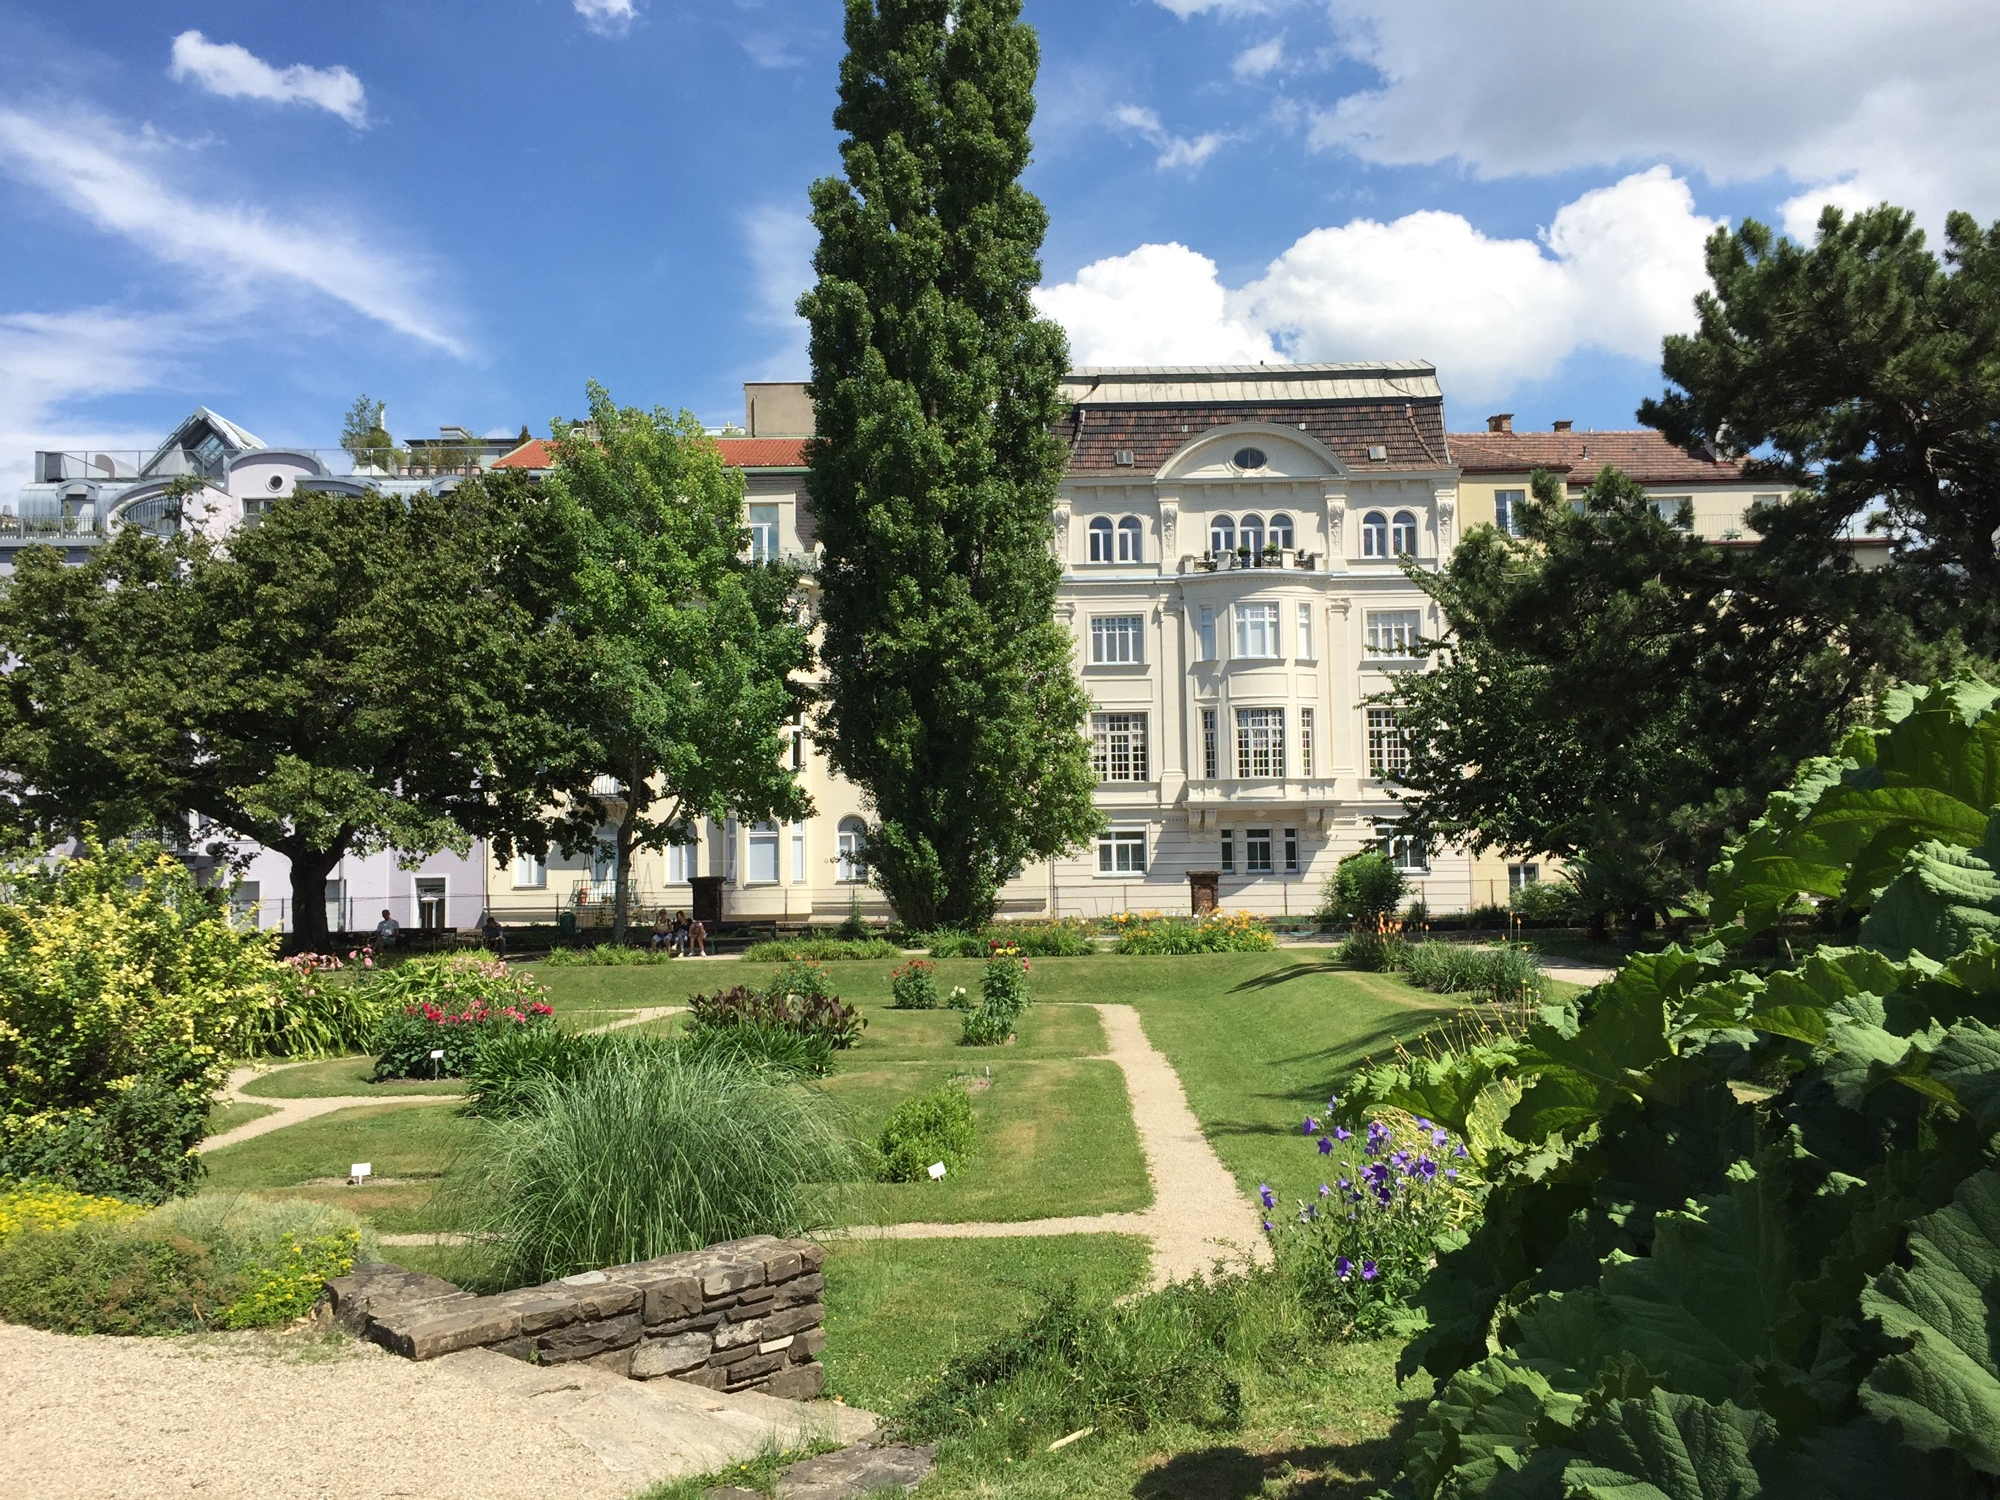 Überblick über einen Teil des botanischen Gartens in Wien, der in dieser Richtung an die Jacquingasse grenzt